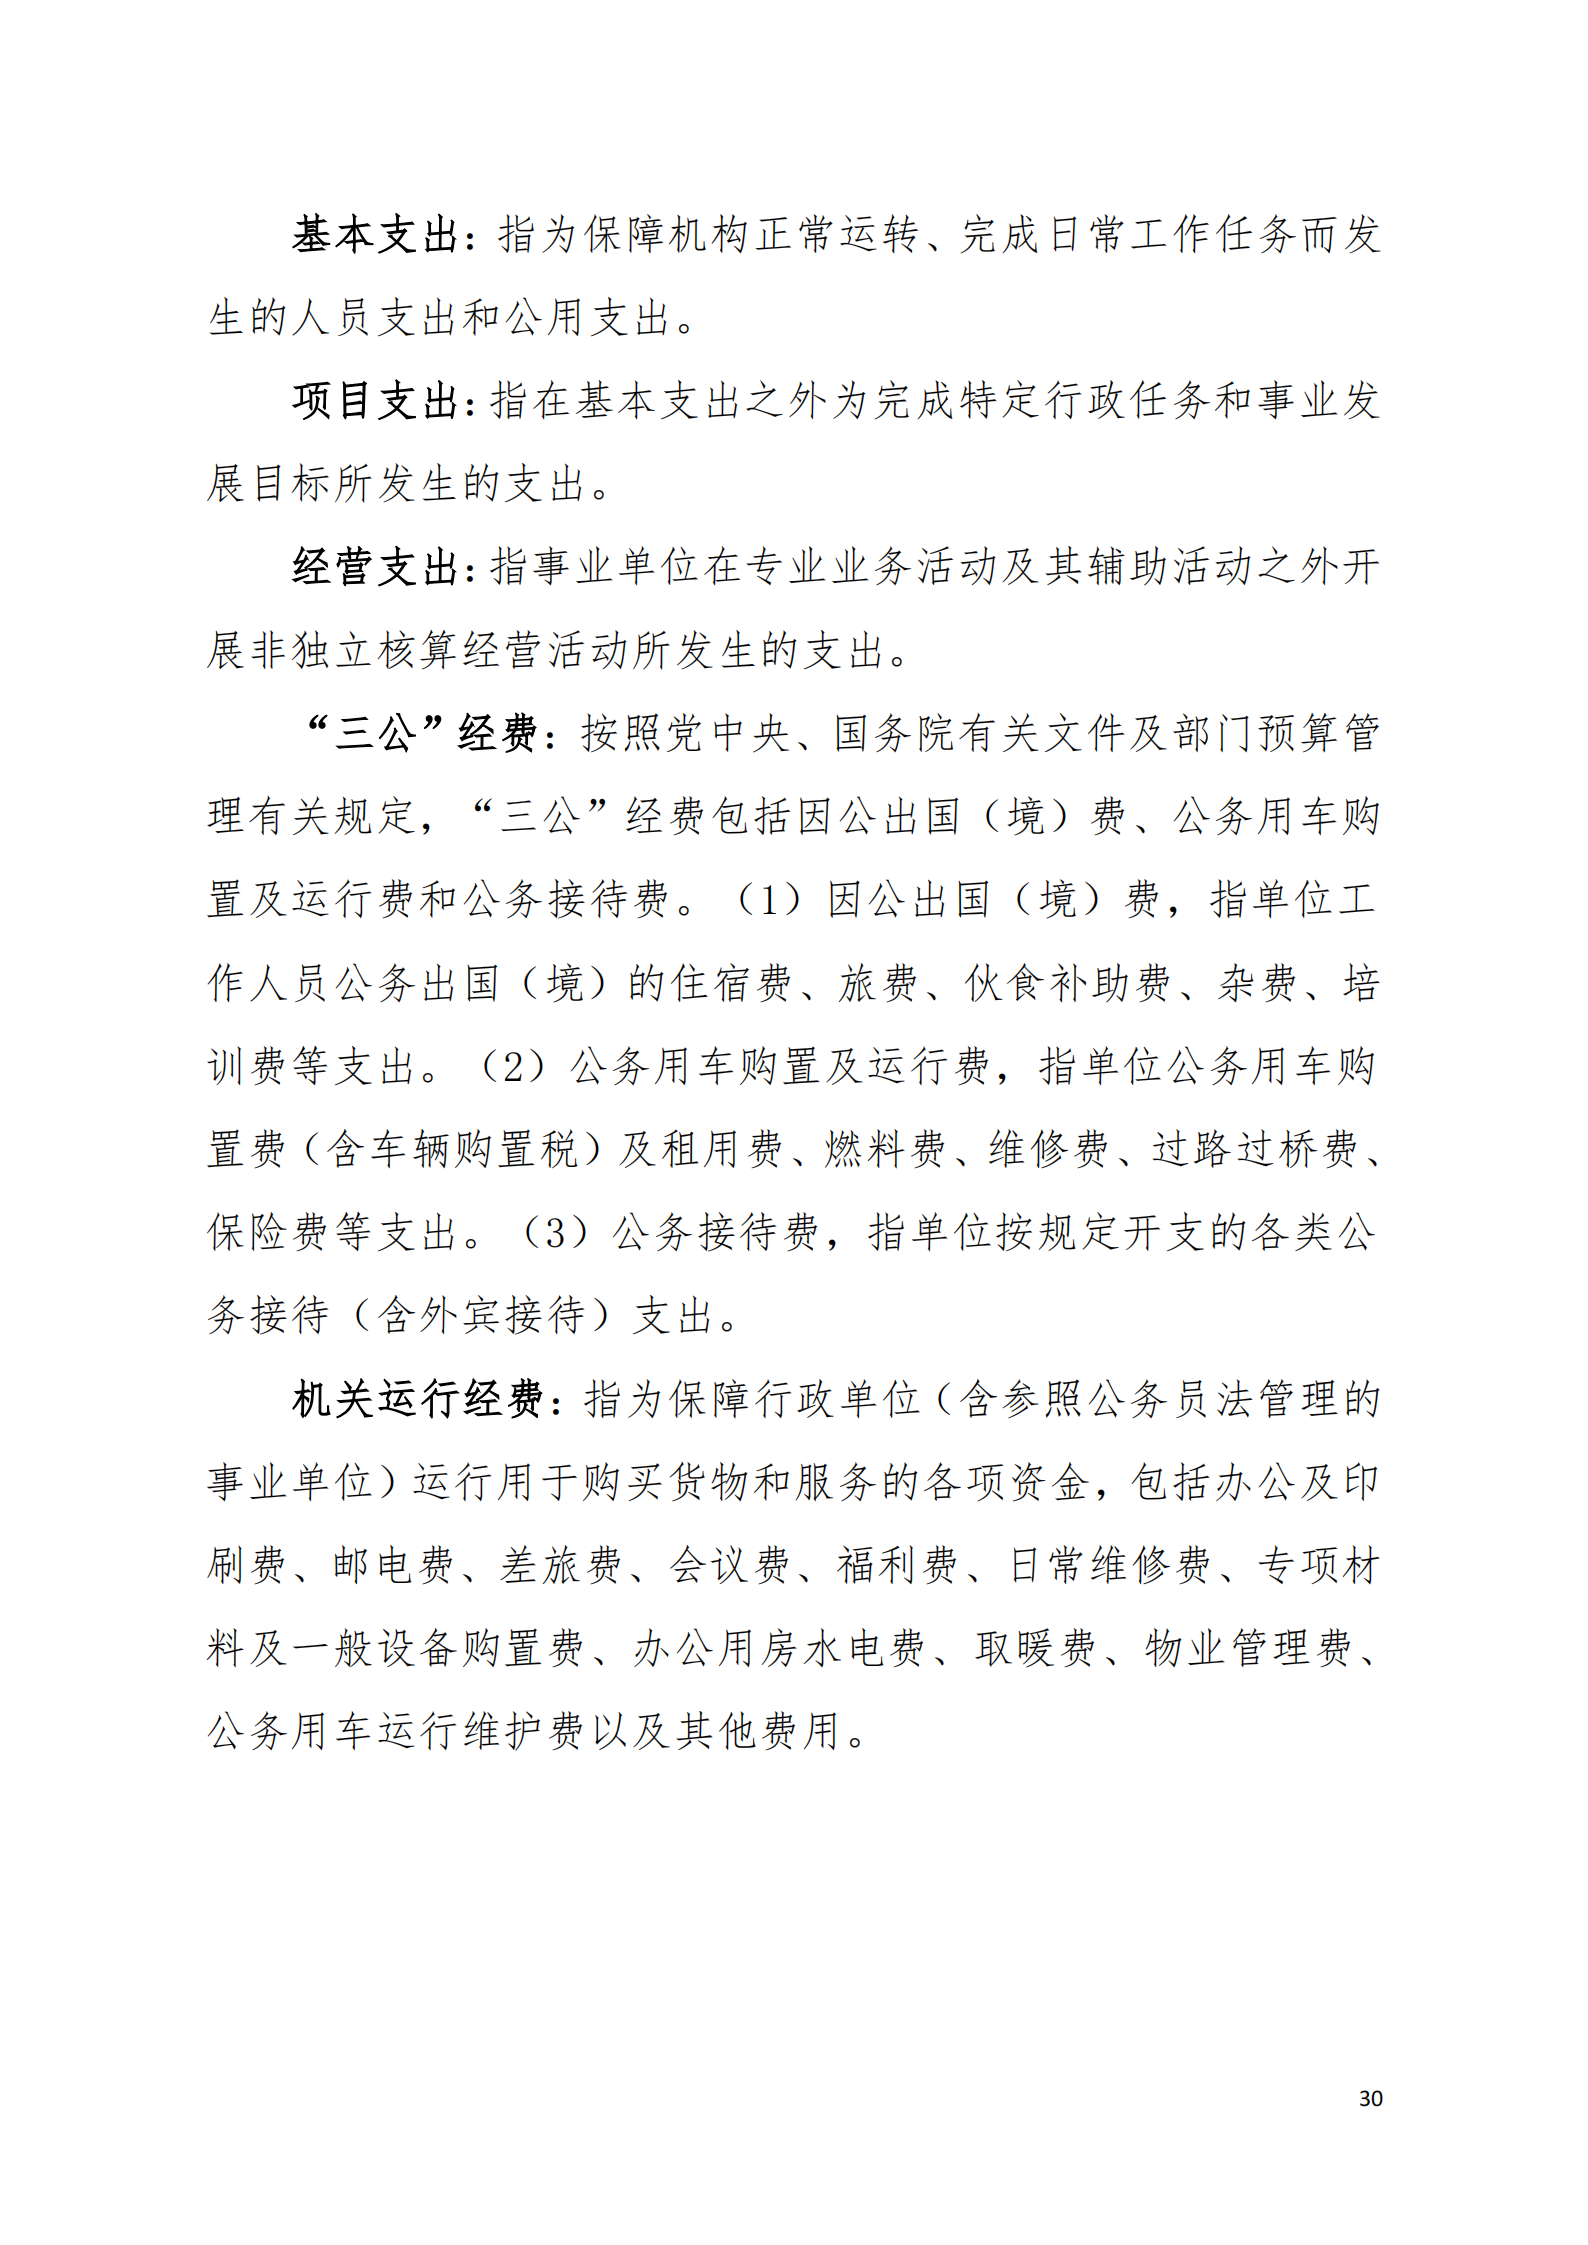 2020年阳江高新技术产业开发区规划建设和交通局部门决算公开_02.png